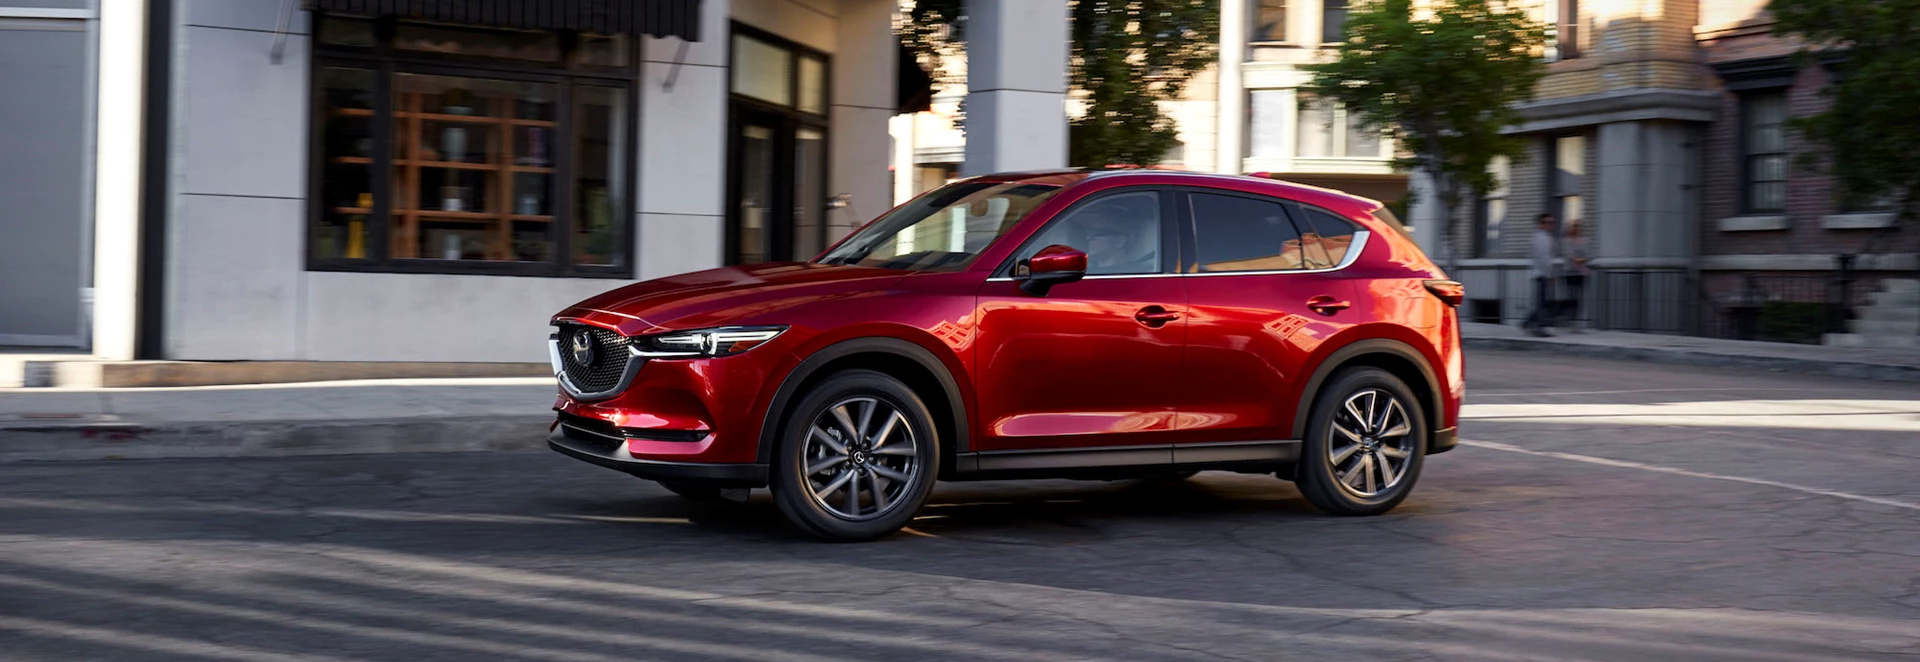 2018 Mazda CX-5 review